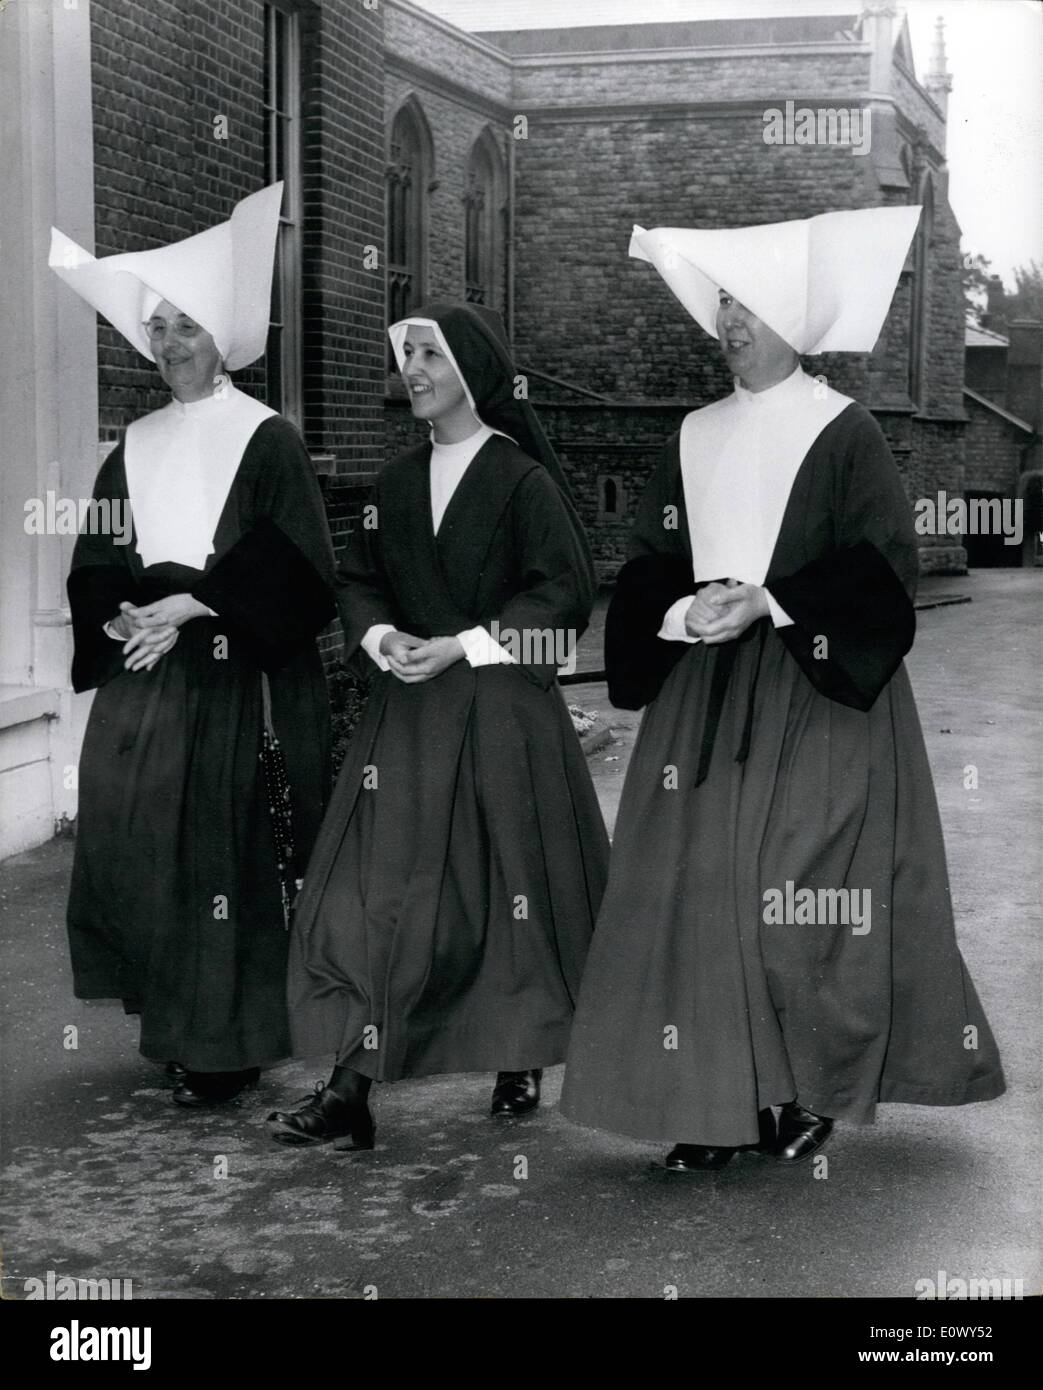 Agosto 19, 1964 - 19-8-64 hábitos de estilo moderno para  monjas.  Primer cambio desde 1633. La mayor comunidad de monjas en la Iglesia  Católica Romana han tenido sus hábitos rediseñado. Son